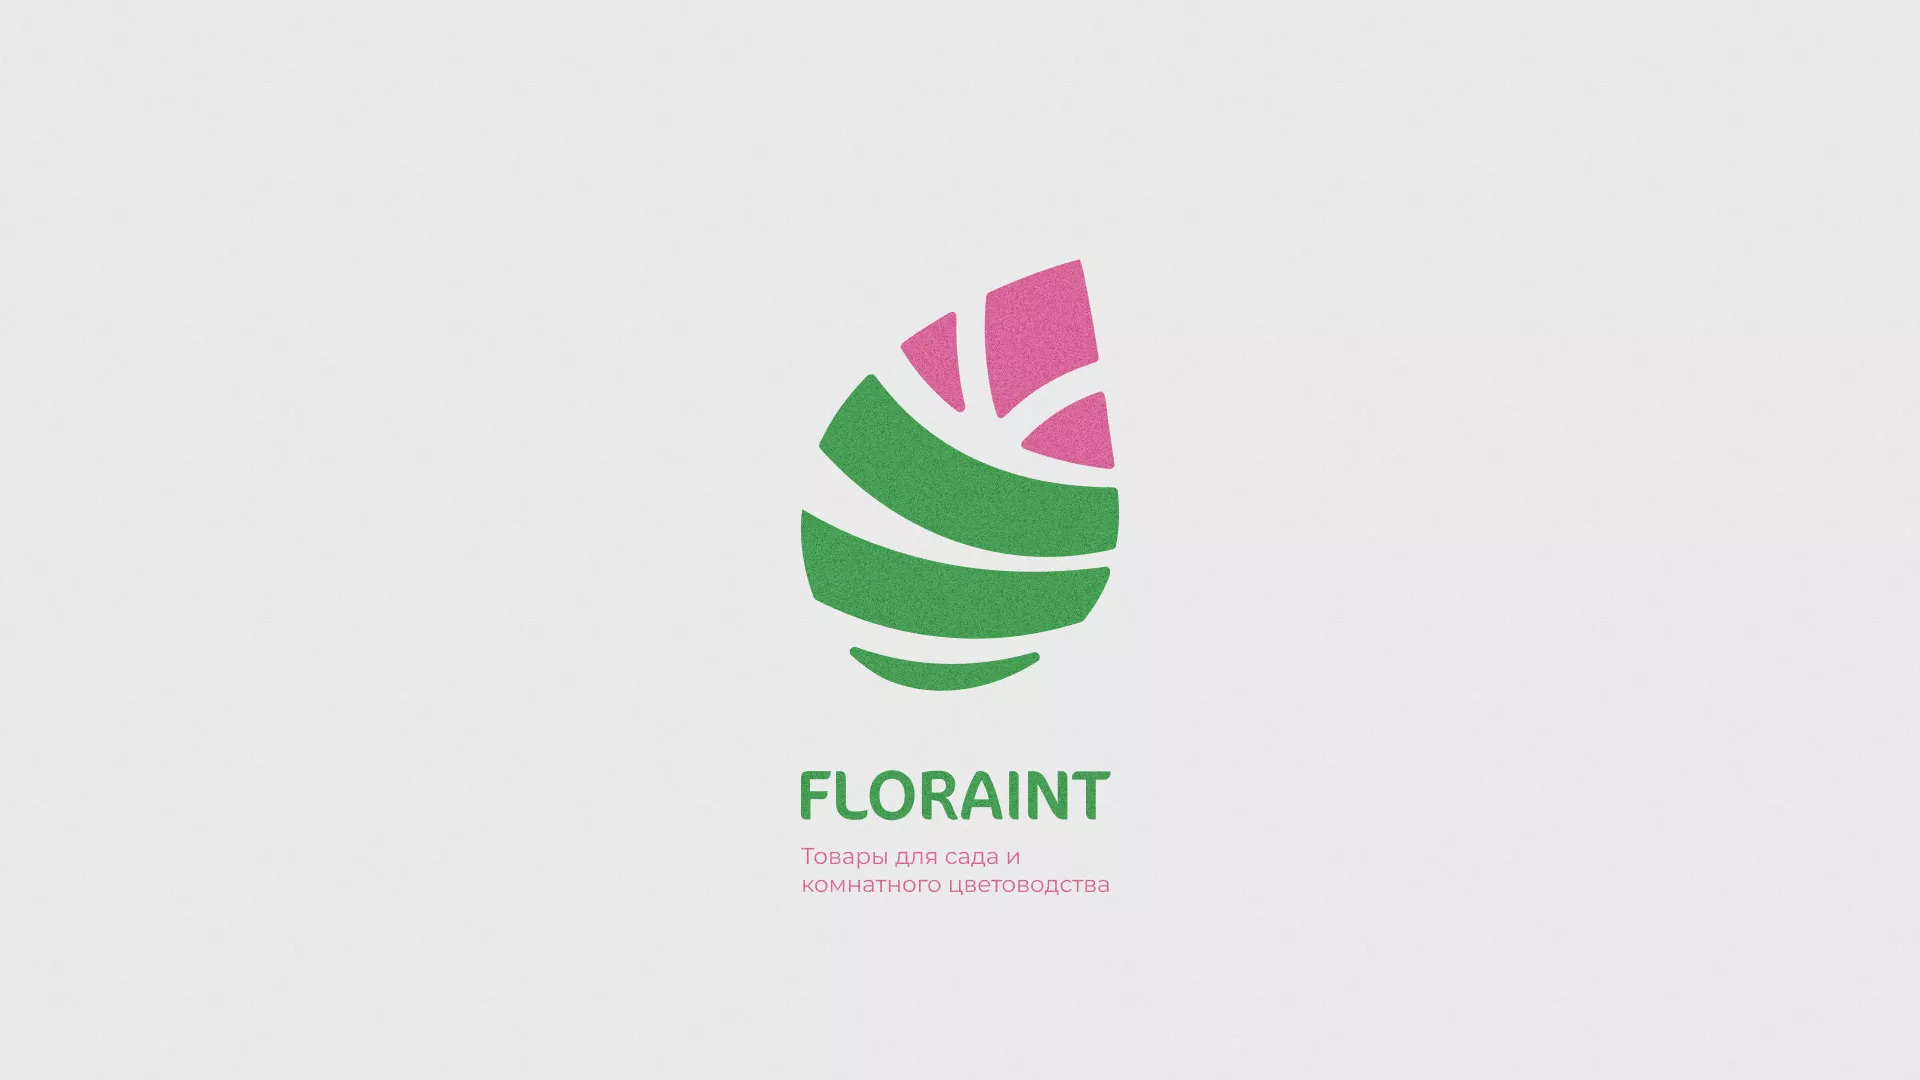 Разработка оформления профиля Instagram для магазина «Floraint» в Никольском